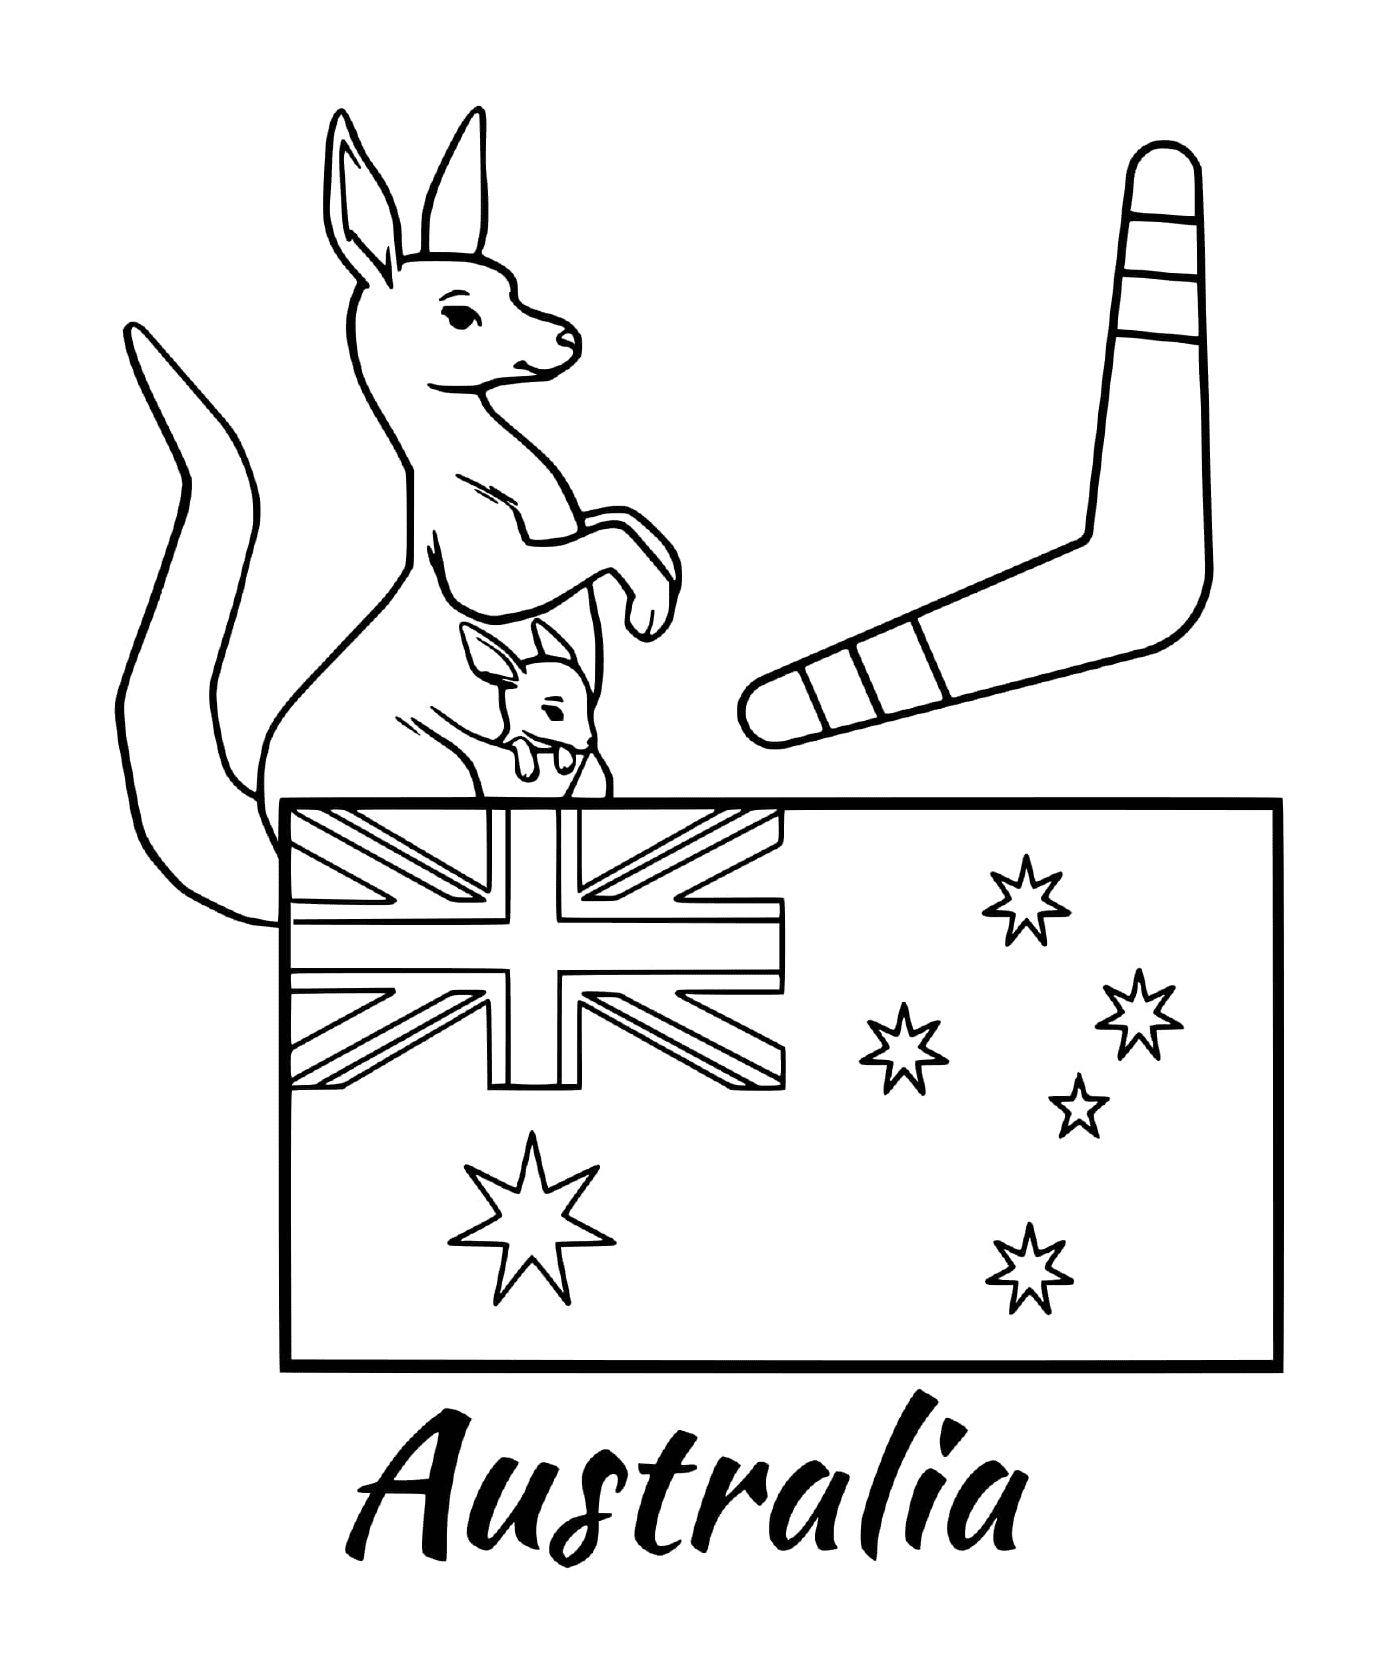  Bandeira da Austrália com um bumerangue 